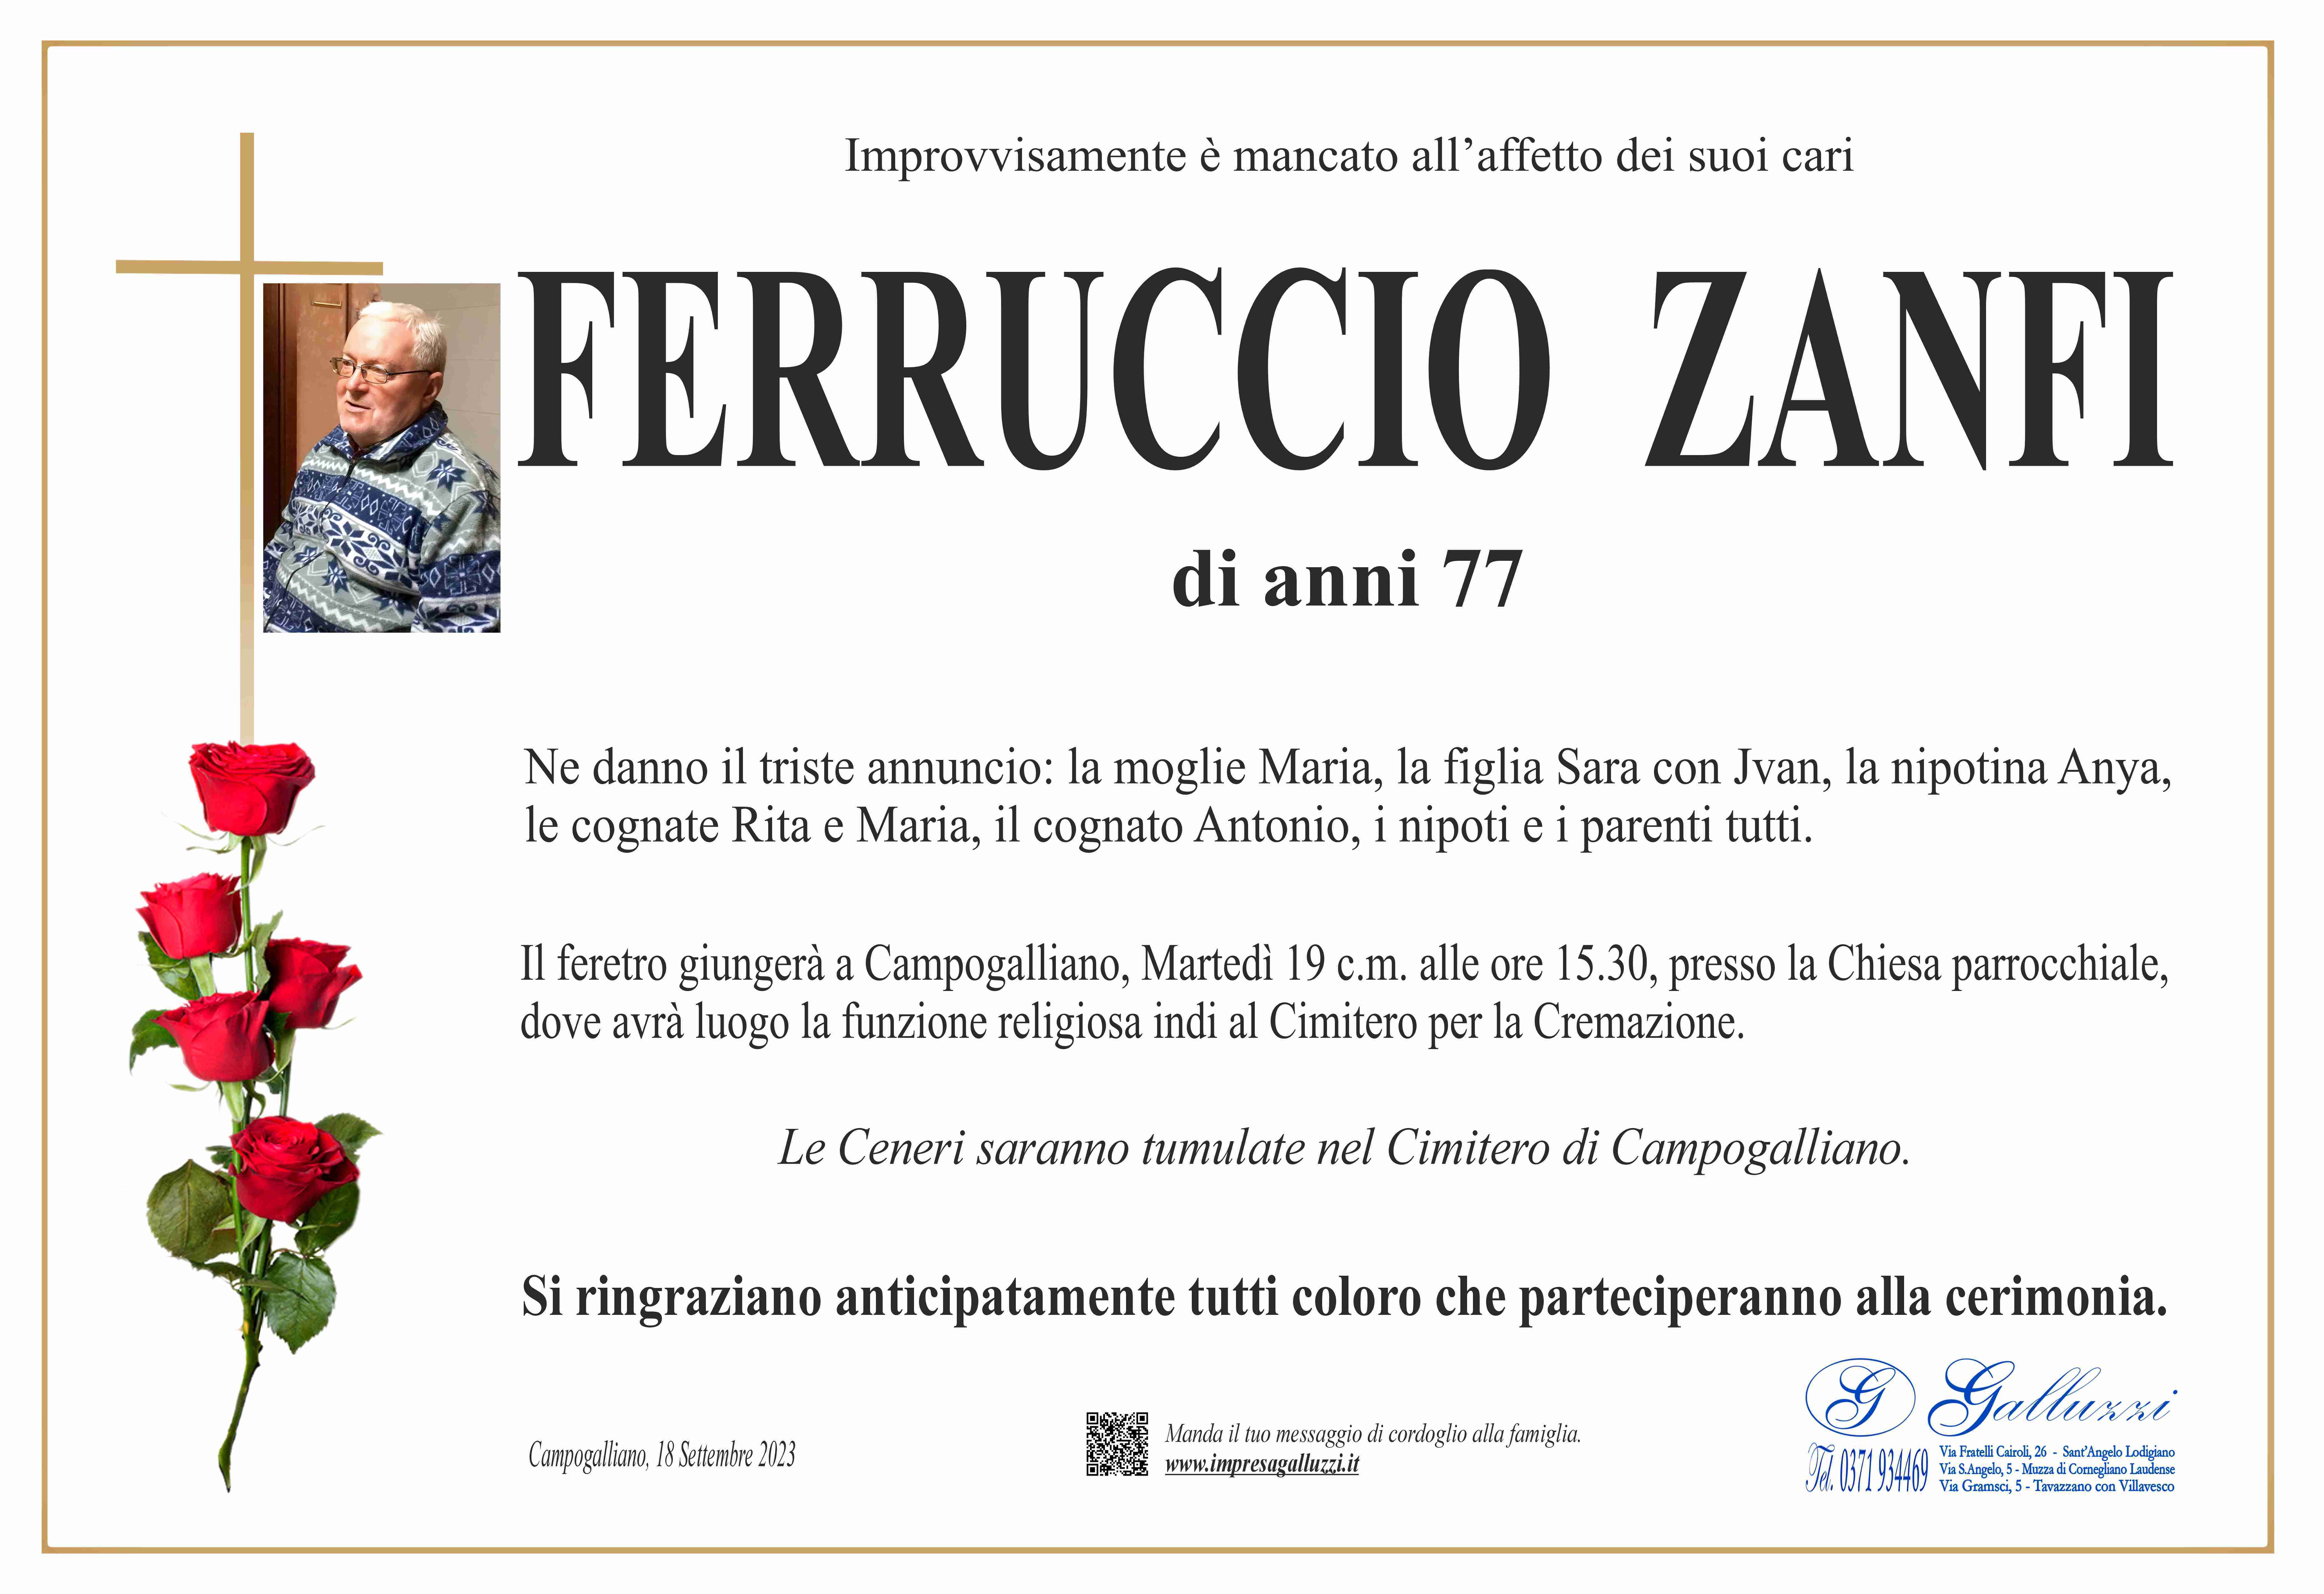 Ferruccio Zanfi